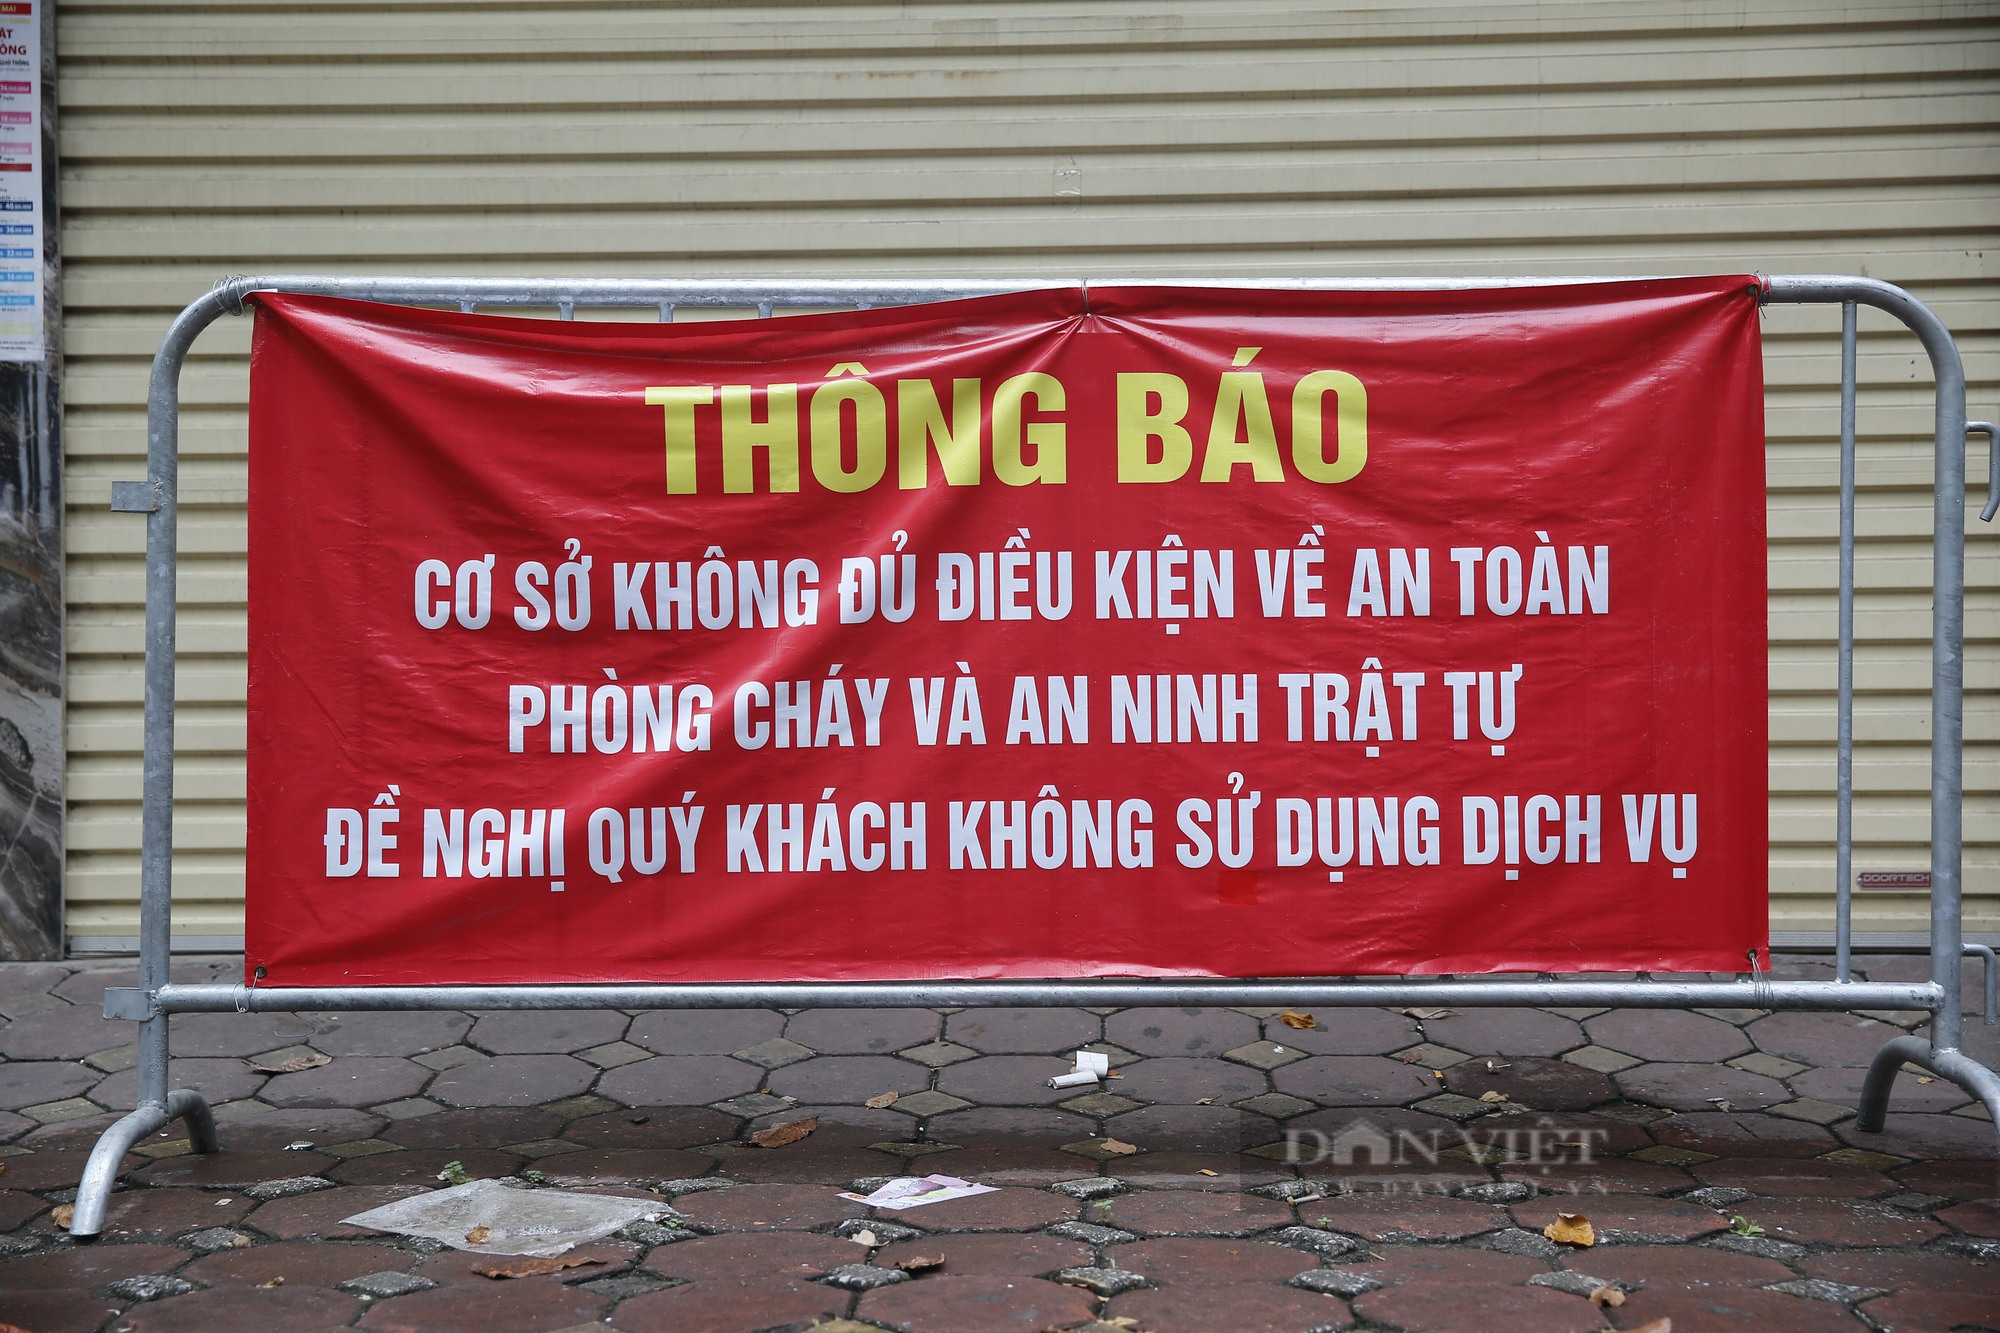 Ngừng kinh doanh quá lâu, nhiều quán karaoke tại Hà Nội treo biển nhà hàng - Ảnh 2.